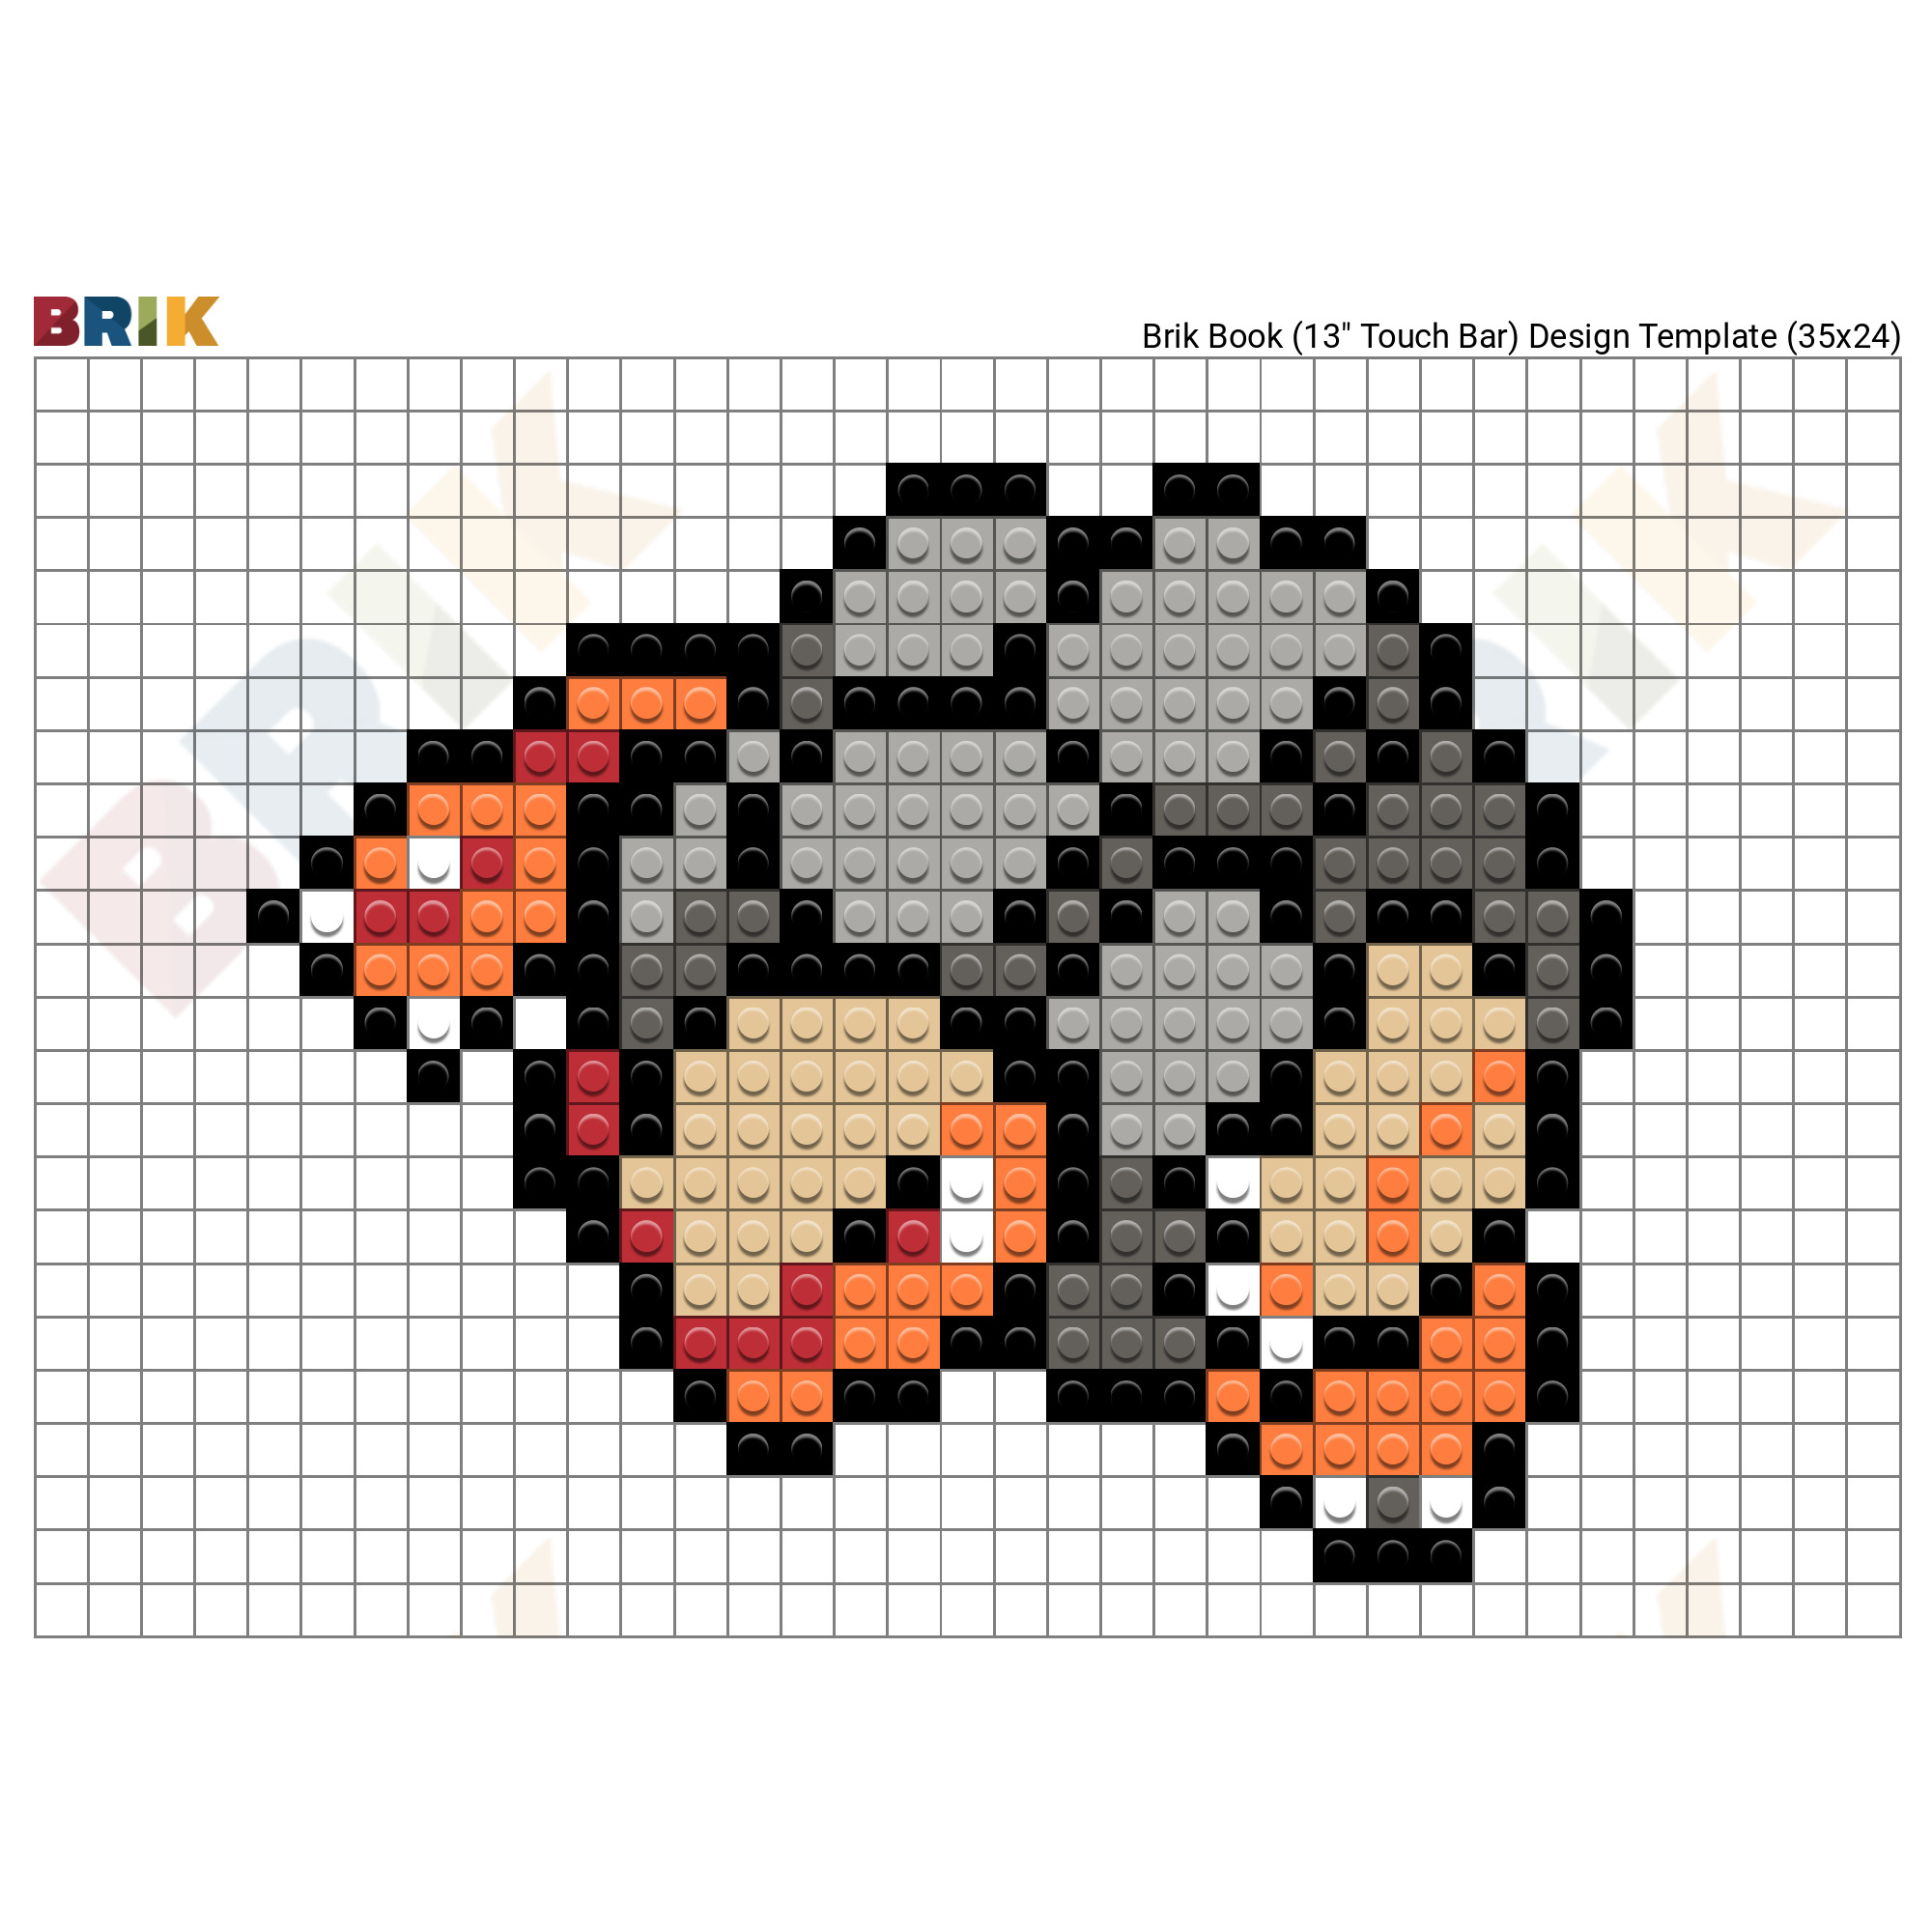 The new Pokémon Gimmighoul - 32x32 px : r/PixelArt